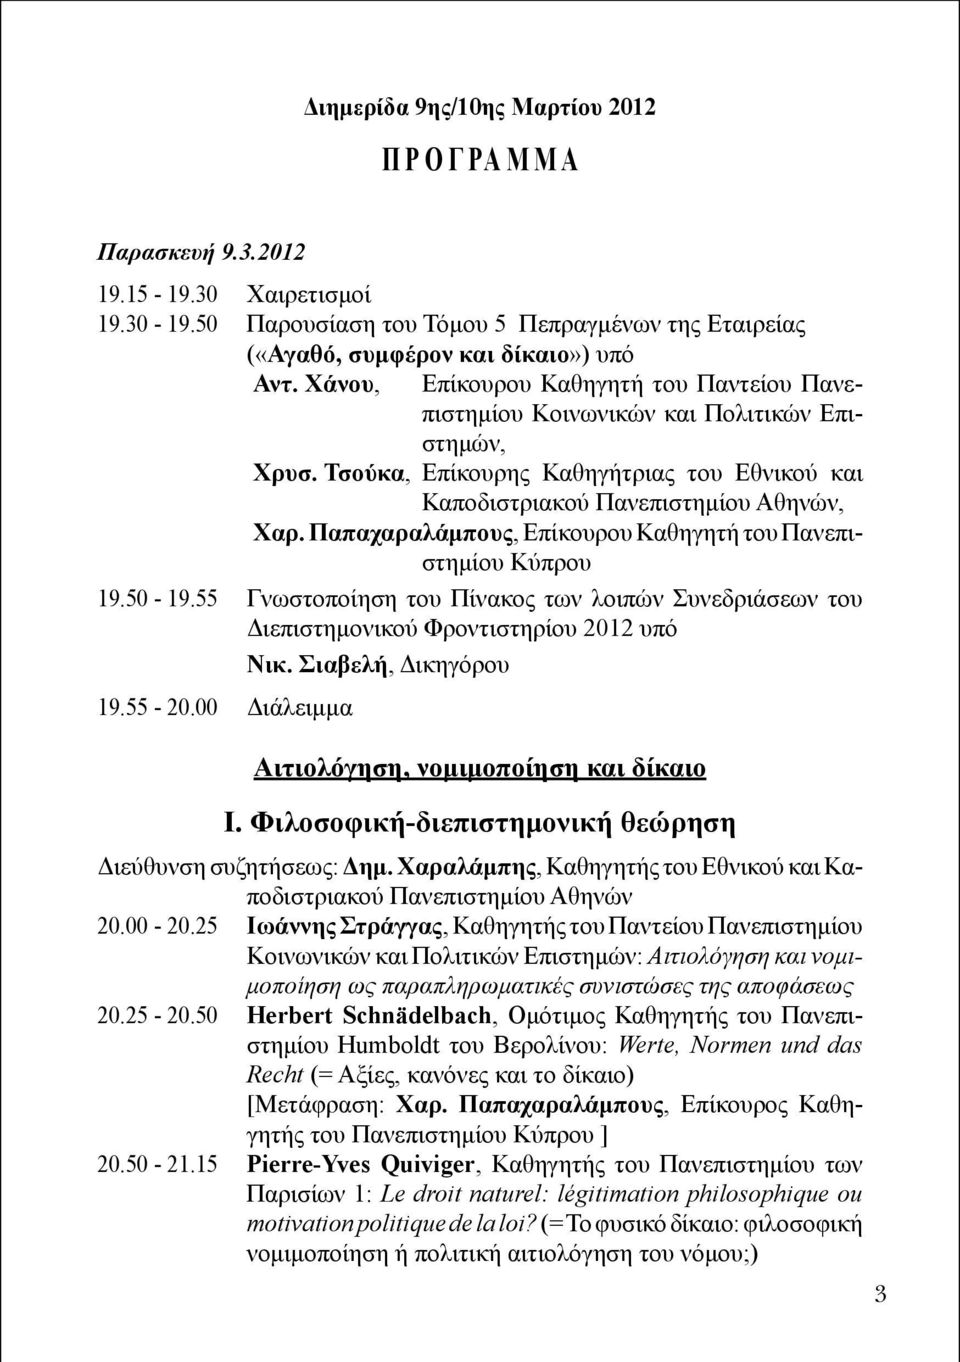 Παπαχαραλάμπους, Επίκουρου Καθηγητή του Πανεπιστημίου Κύπρου 19.50-19.55 Γνωστοποίηση του Πίνακος των λοιπών Συνεδριάσεων του Διεπιστημονικού Φροντιστηρίου 2012 υπό Νικ. Σιαβελή, Δι κηγόρου 19.55-20.